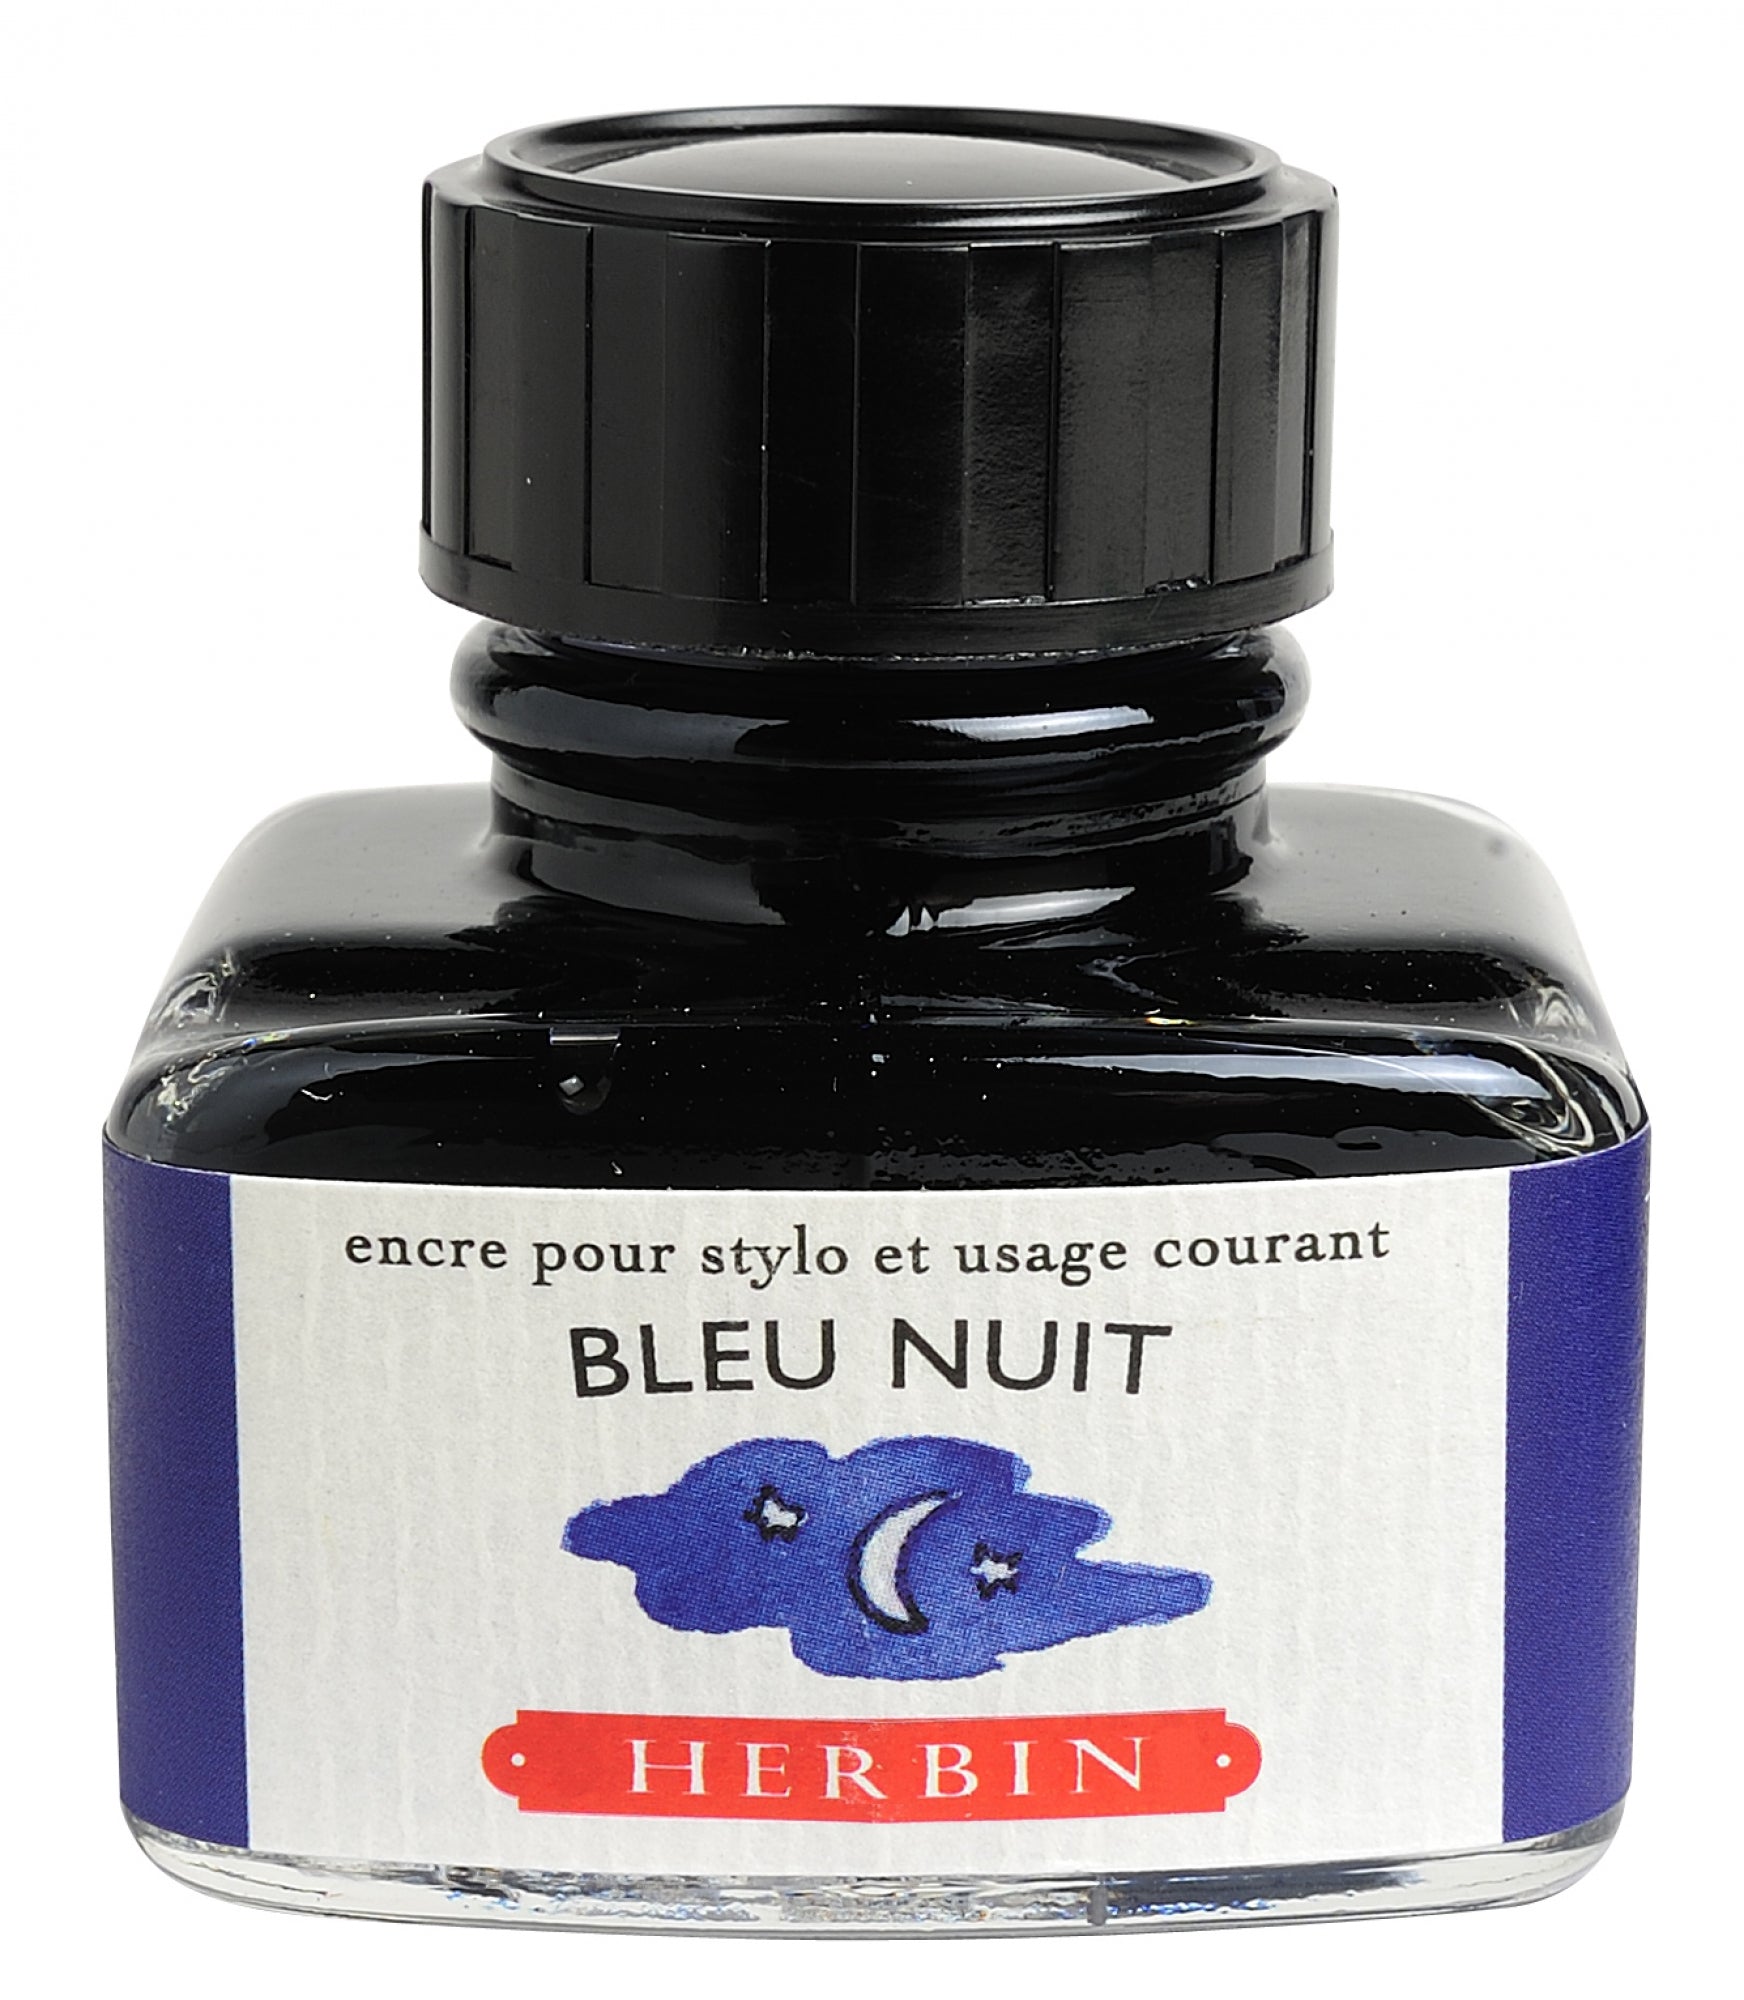 J Herbin Bleu Nuit